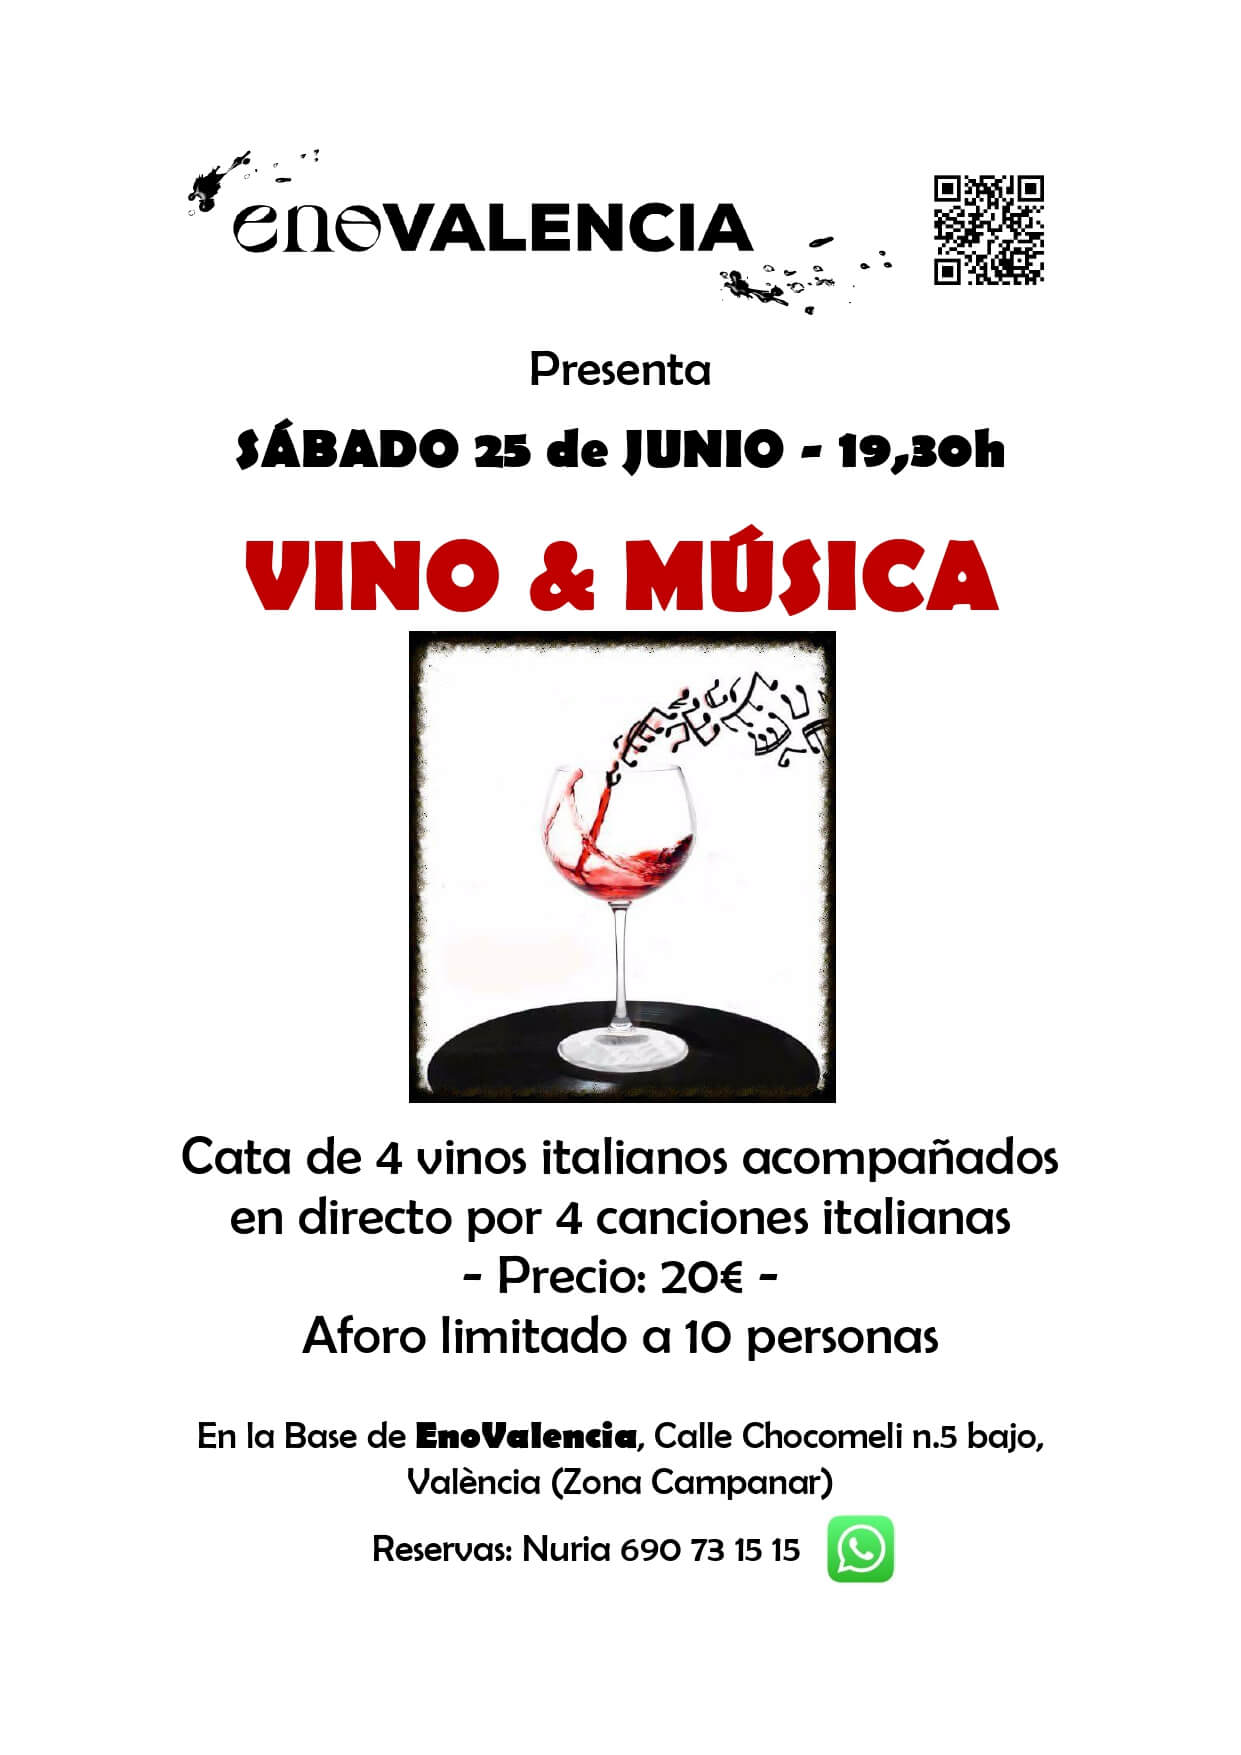 Vino y música 4 Vinos + 4 Canciones italianas EnoValencia - Cata, eventos y venta de vino 5